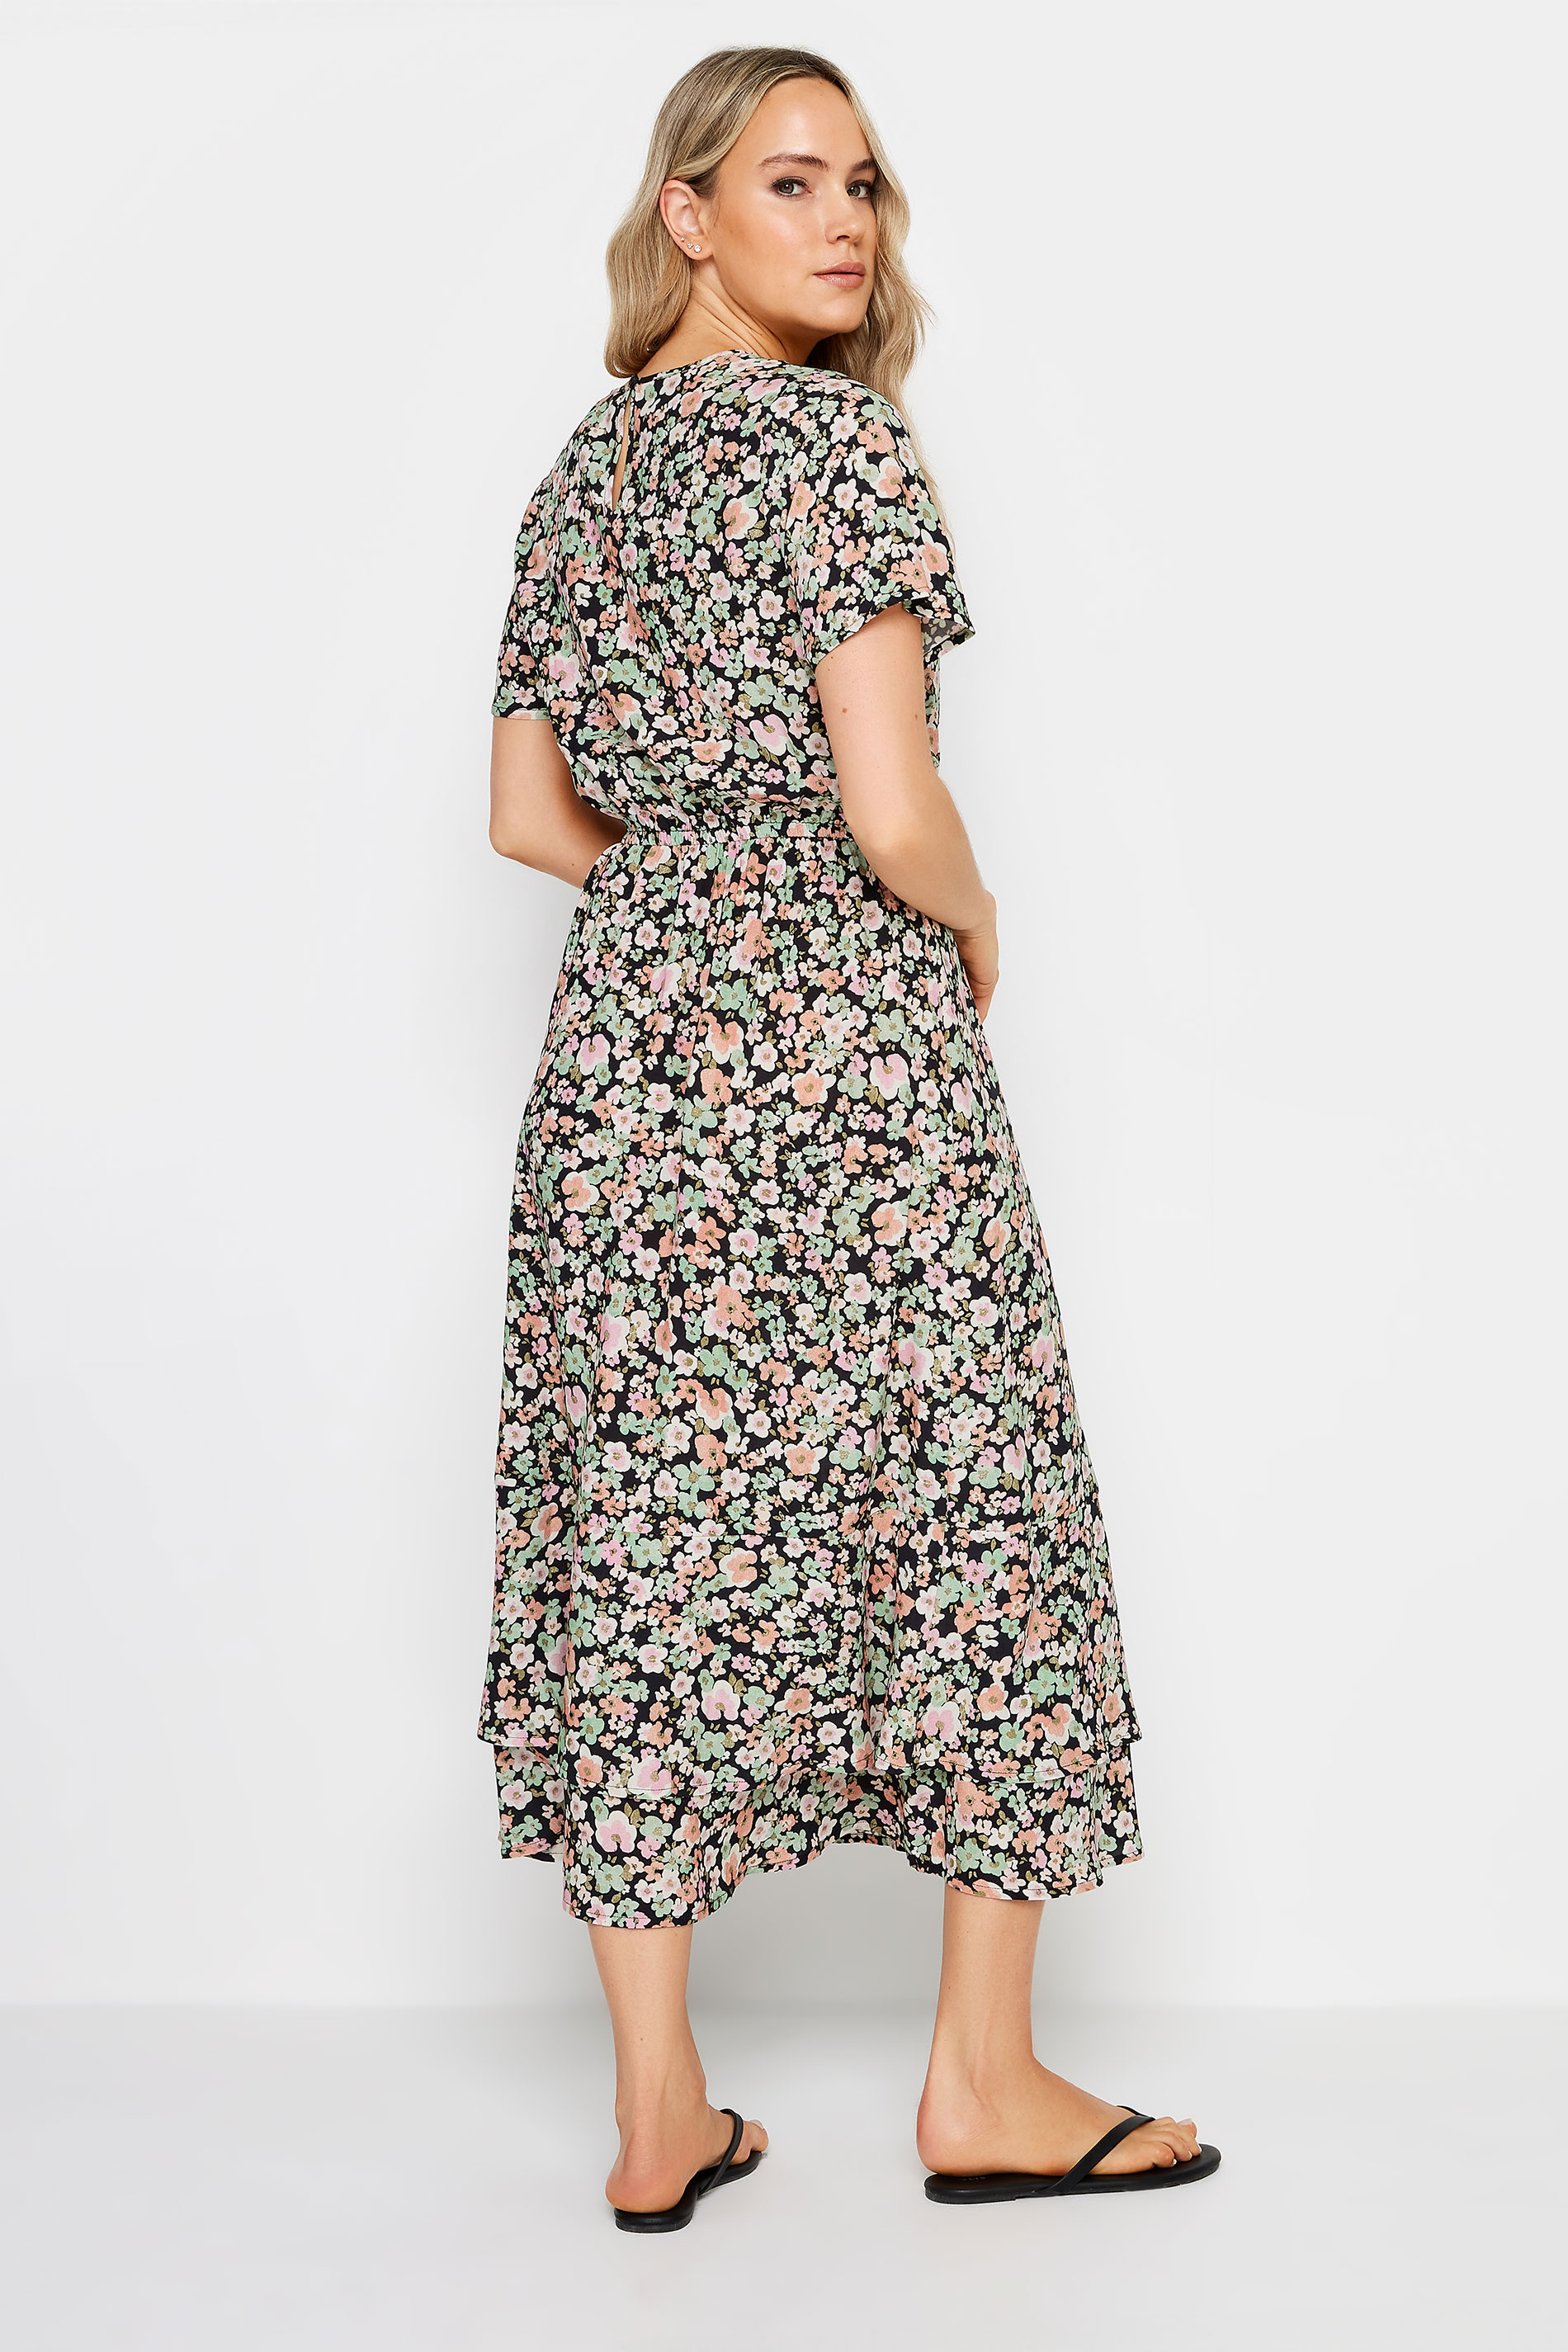 LTS Tall Womens Khaki Green Floral Print Tie Waist Midi Dress | Long Tall Sally 3